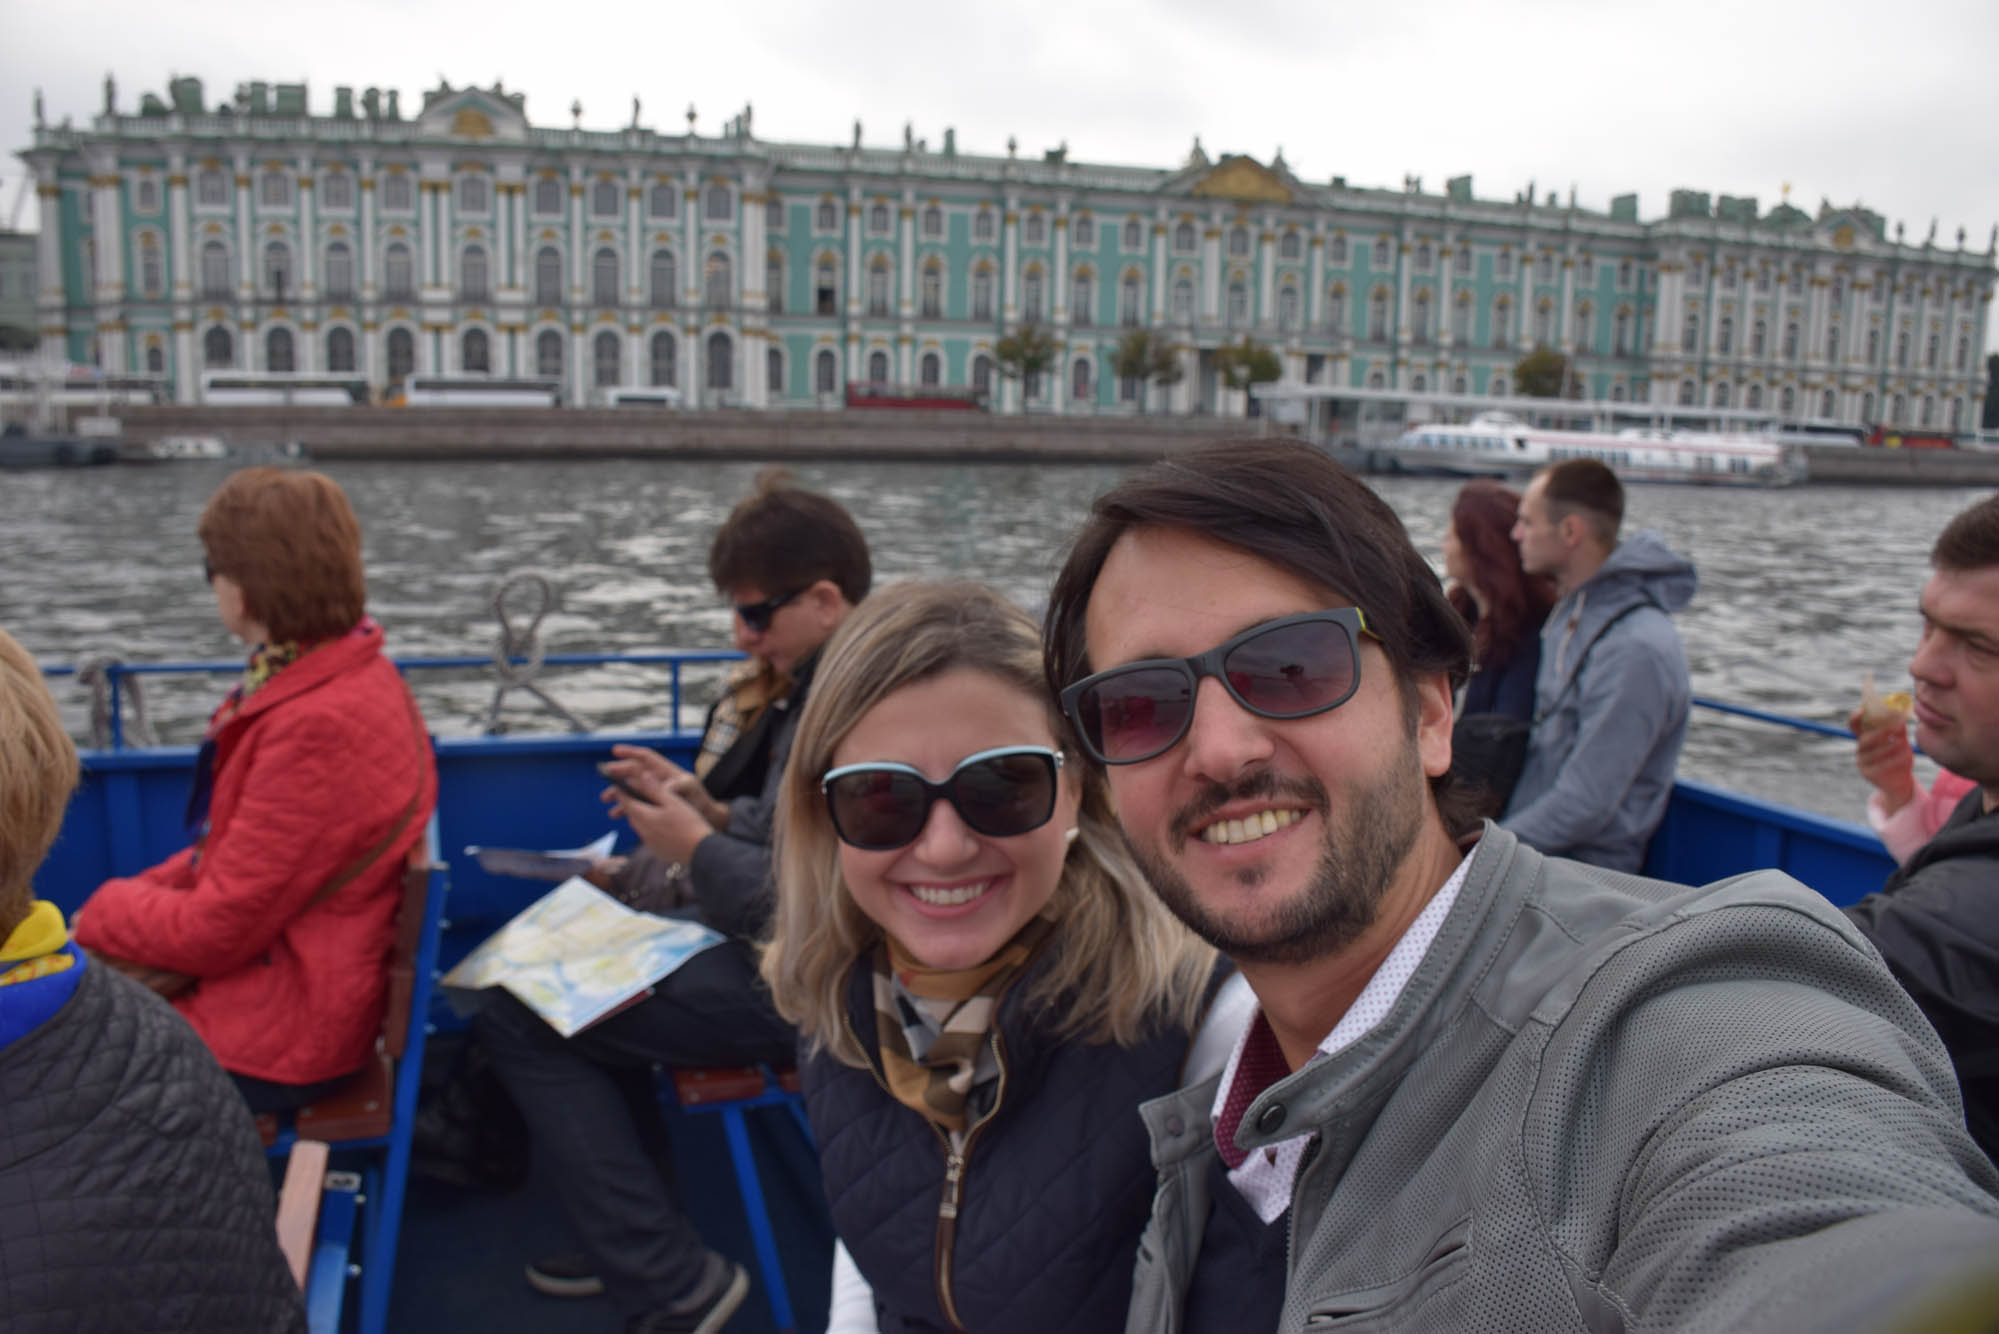 Passeio de barco pelo Rio Neva, em São Petersburgo, com o Palácio de Inverno no fundo